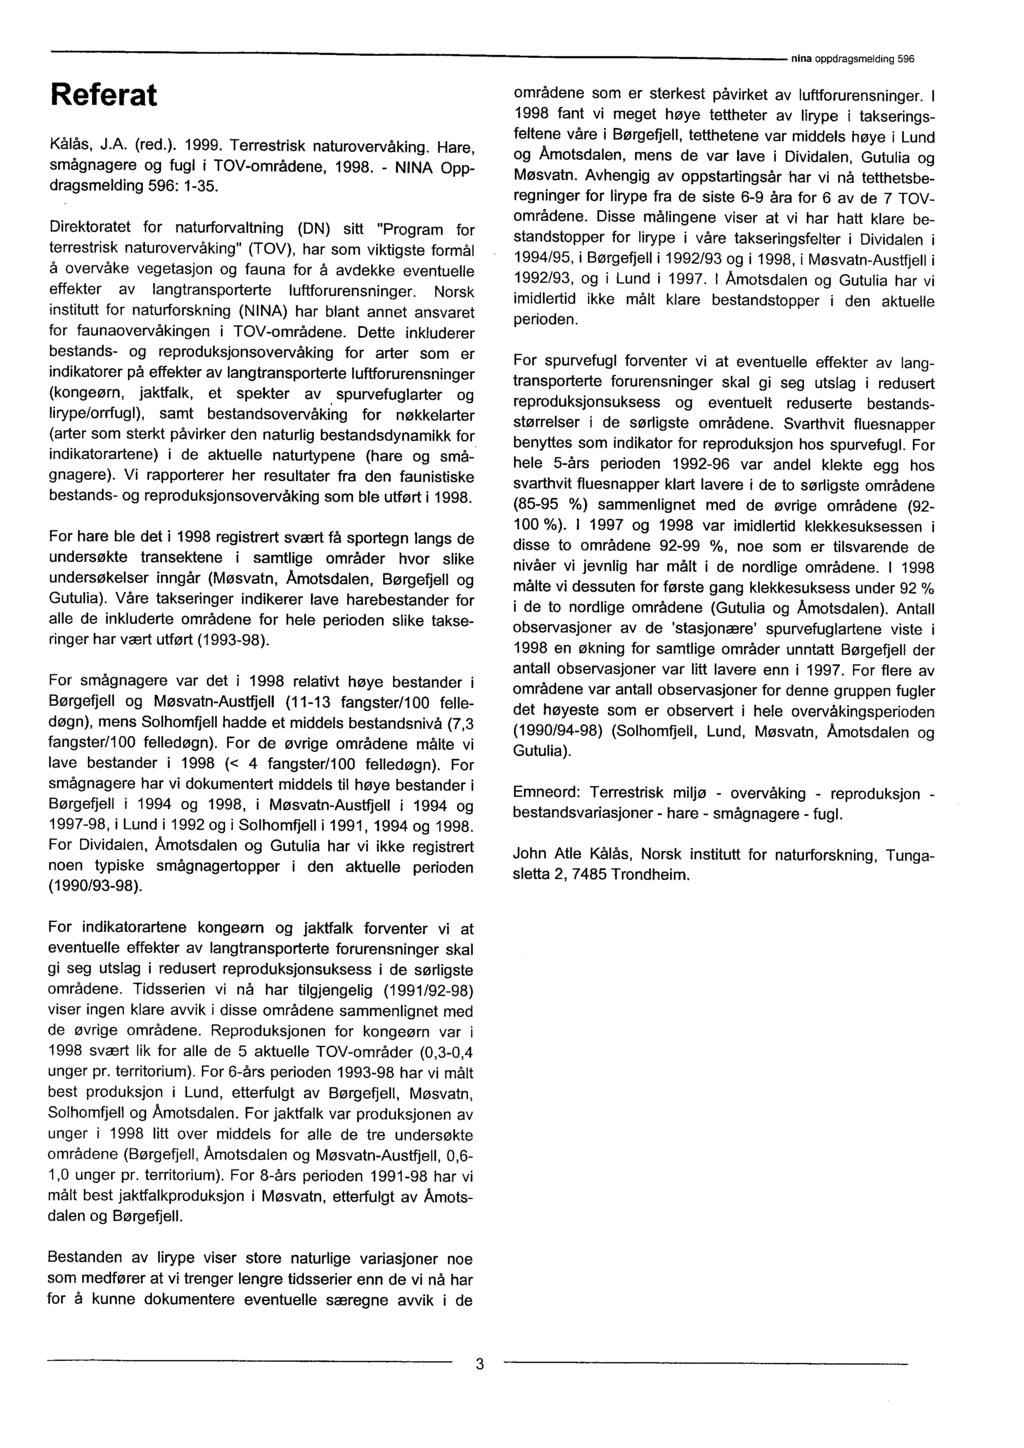 Referat Kålås, J.A. (red.). 1999. Terrestrisk naturovervåking. Hare, smågnagere og fugl i TOV-områdene, 1998. - NINA Oppdragsmelding 596: 1-35.